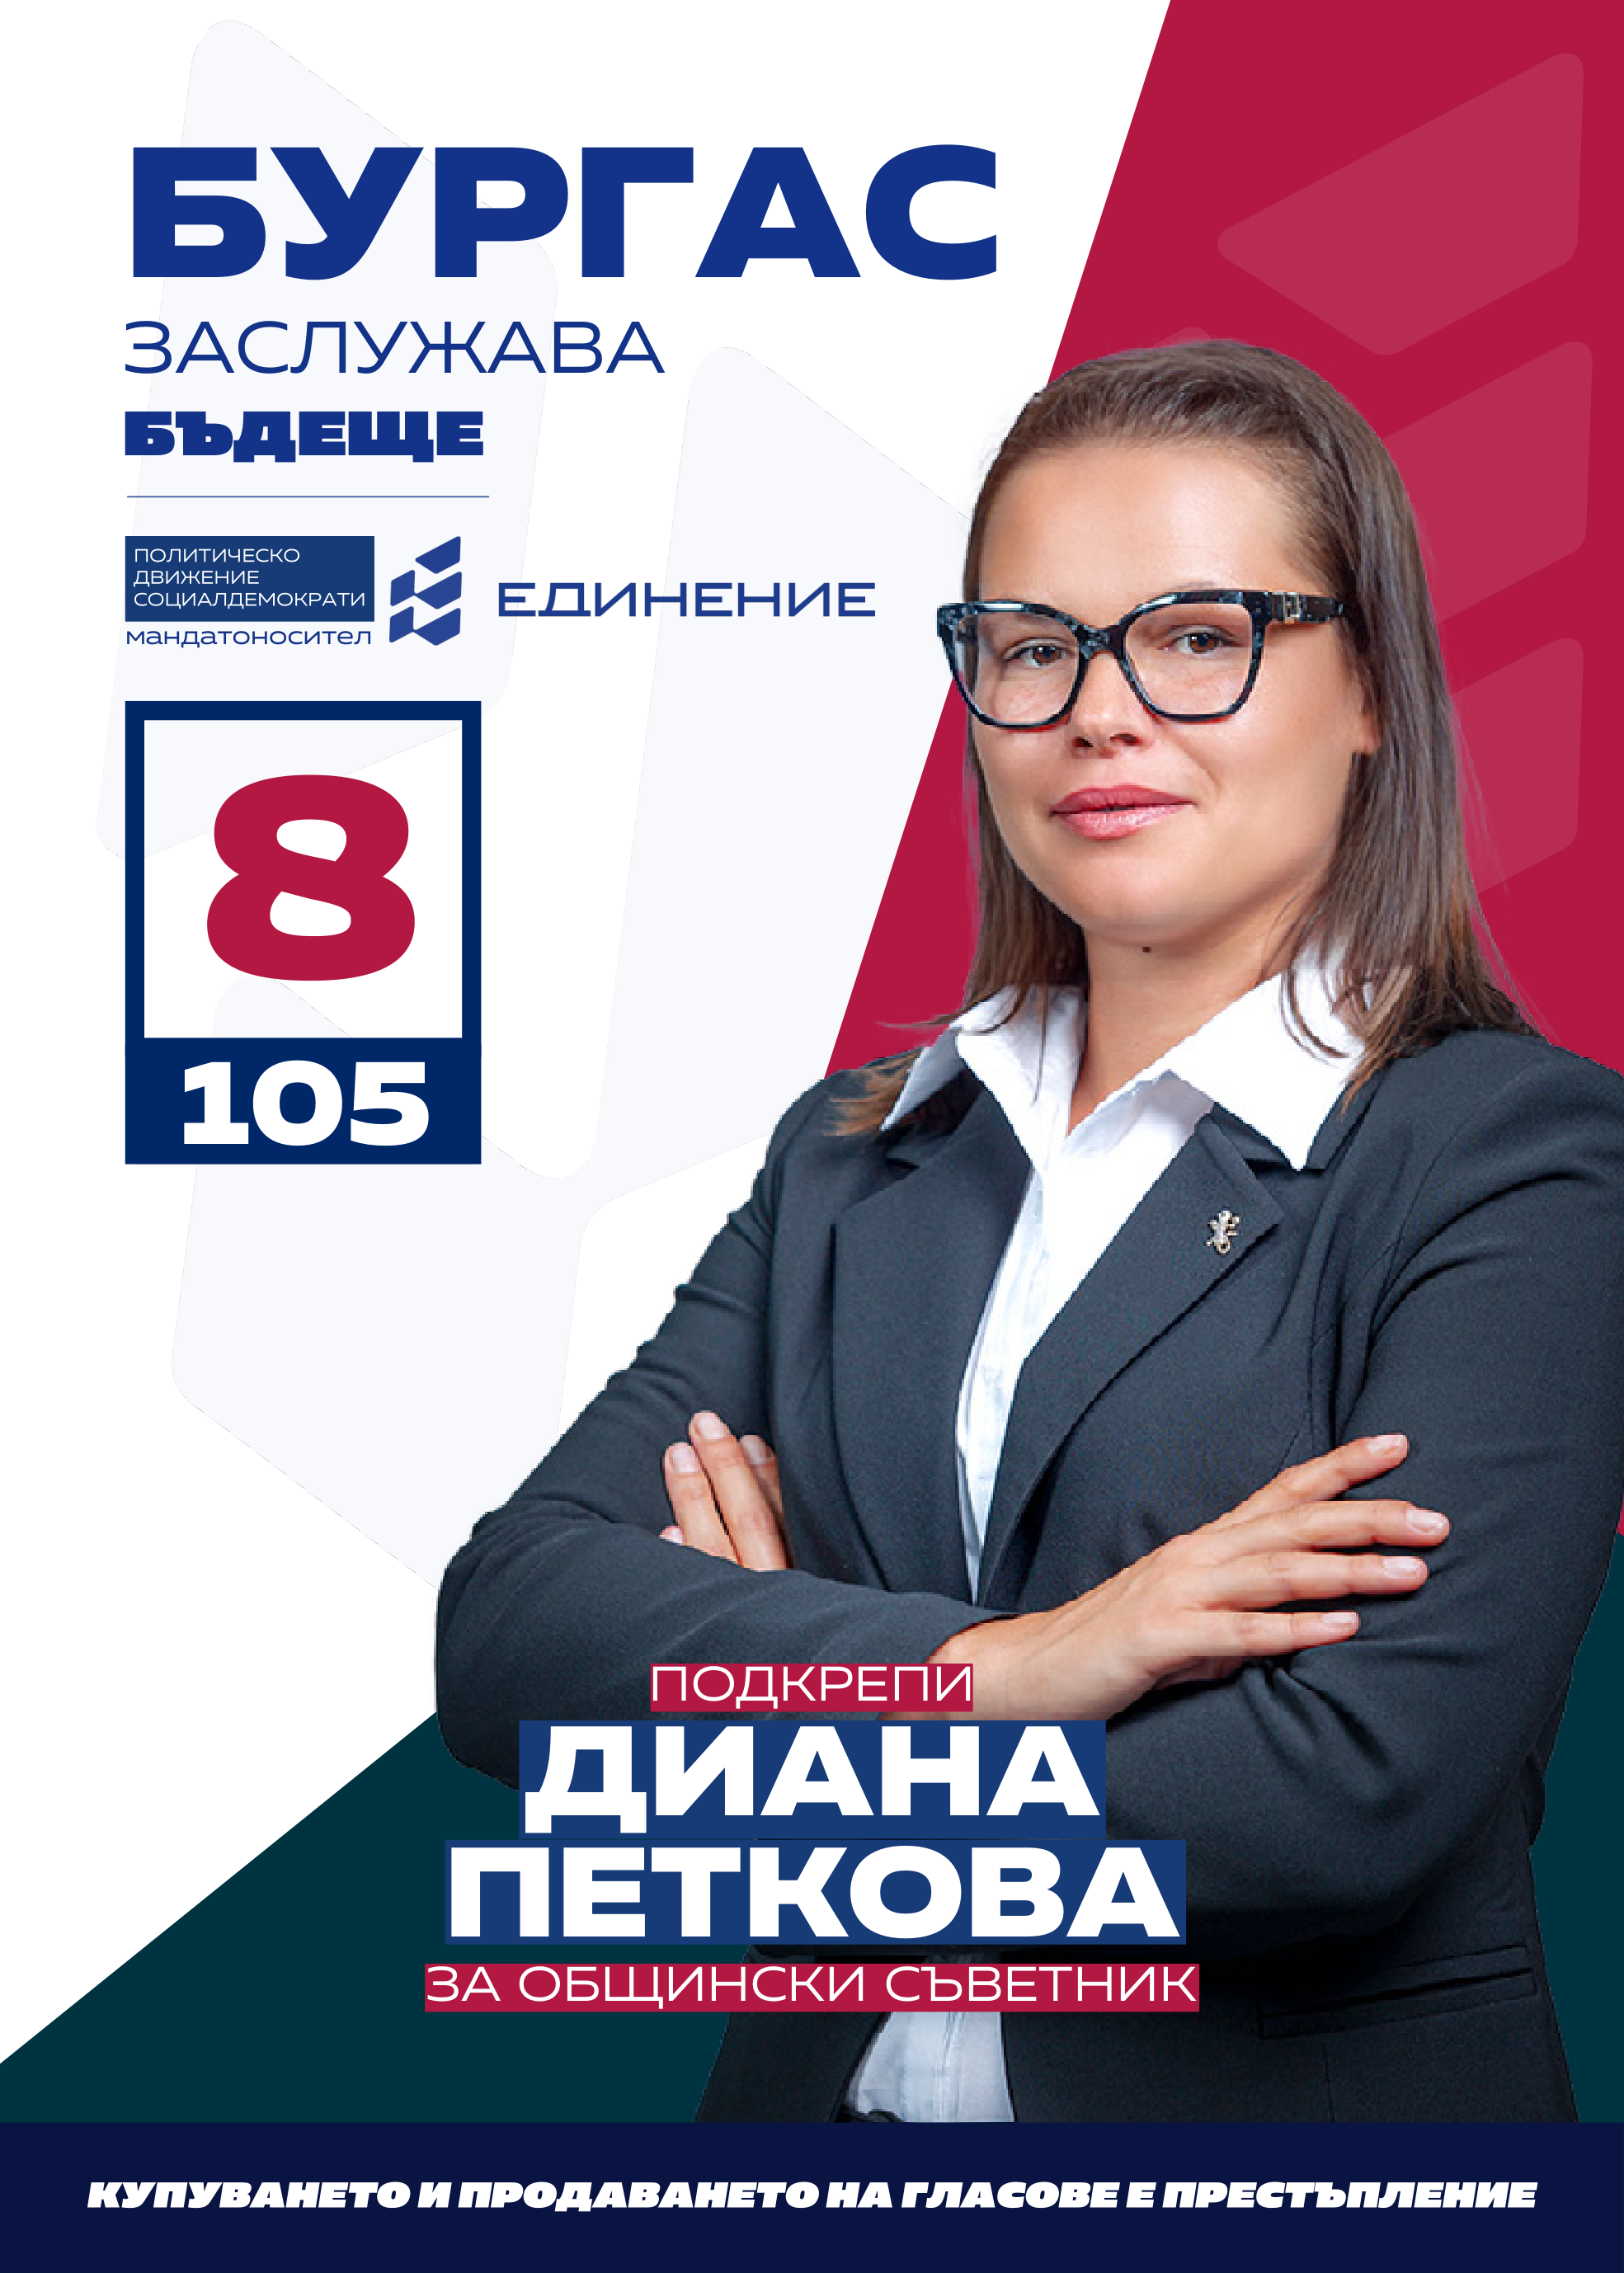 Диана Петкова – училищен психолог
Кандидатът на ПП Единение за общински